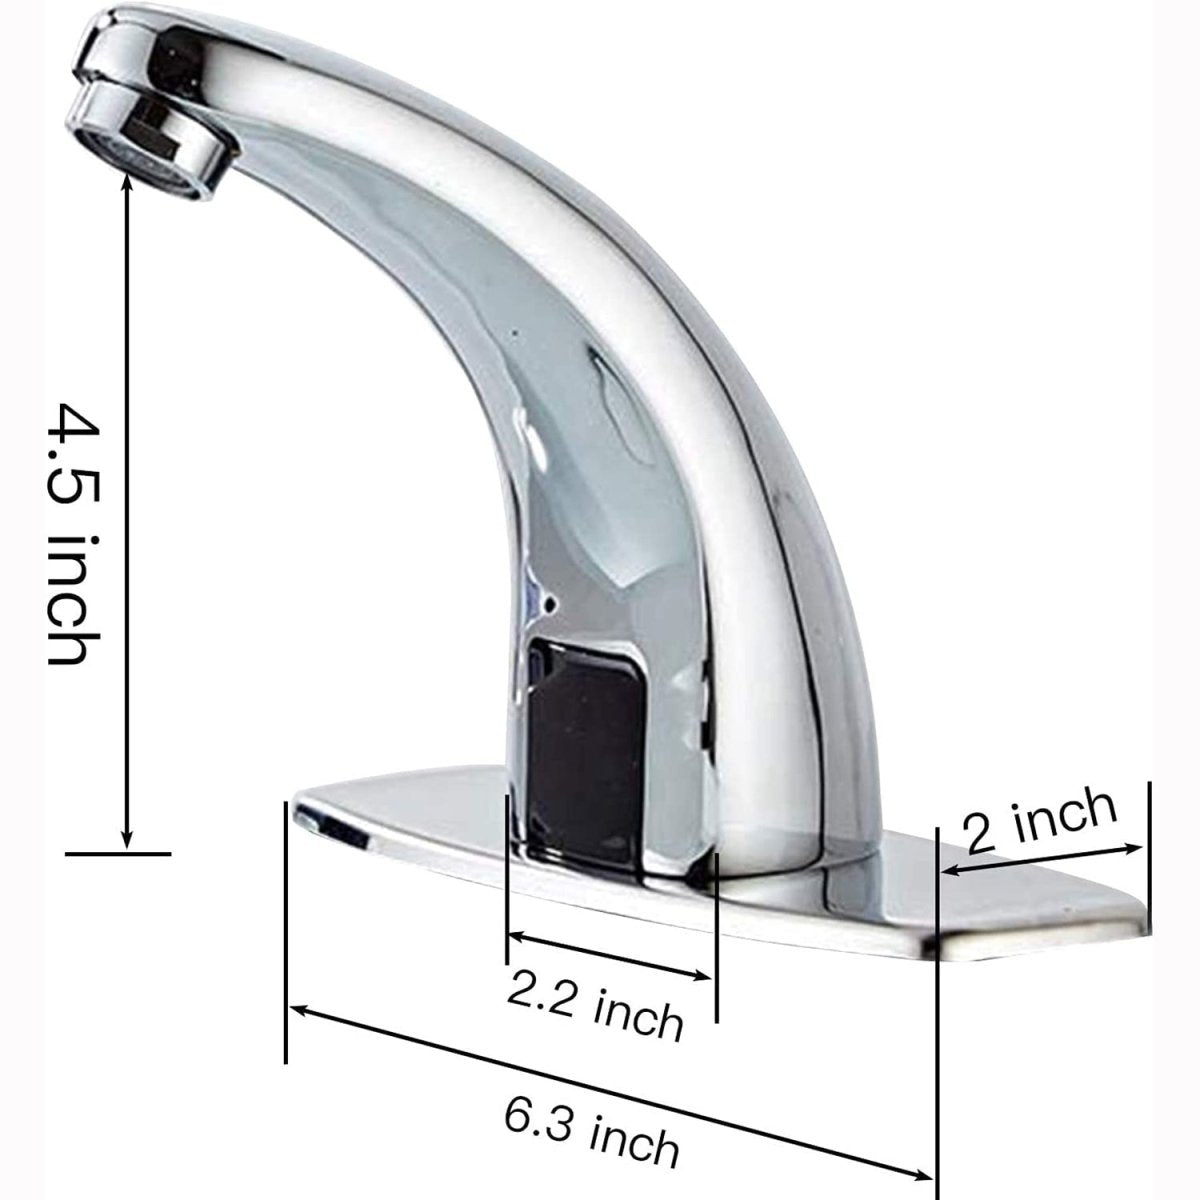 Automatic Sensor Touchless Bathroom Sink Faucet Chrome - buyfaucet.com